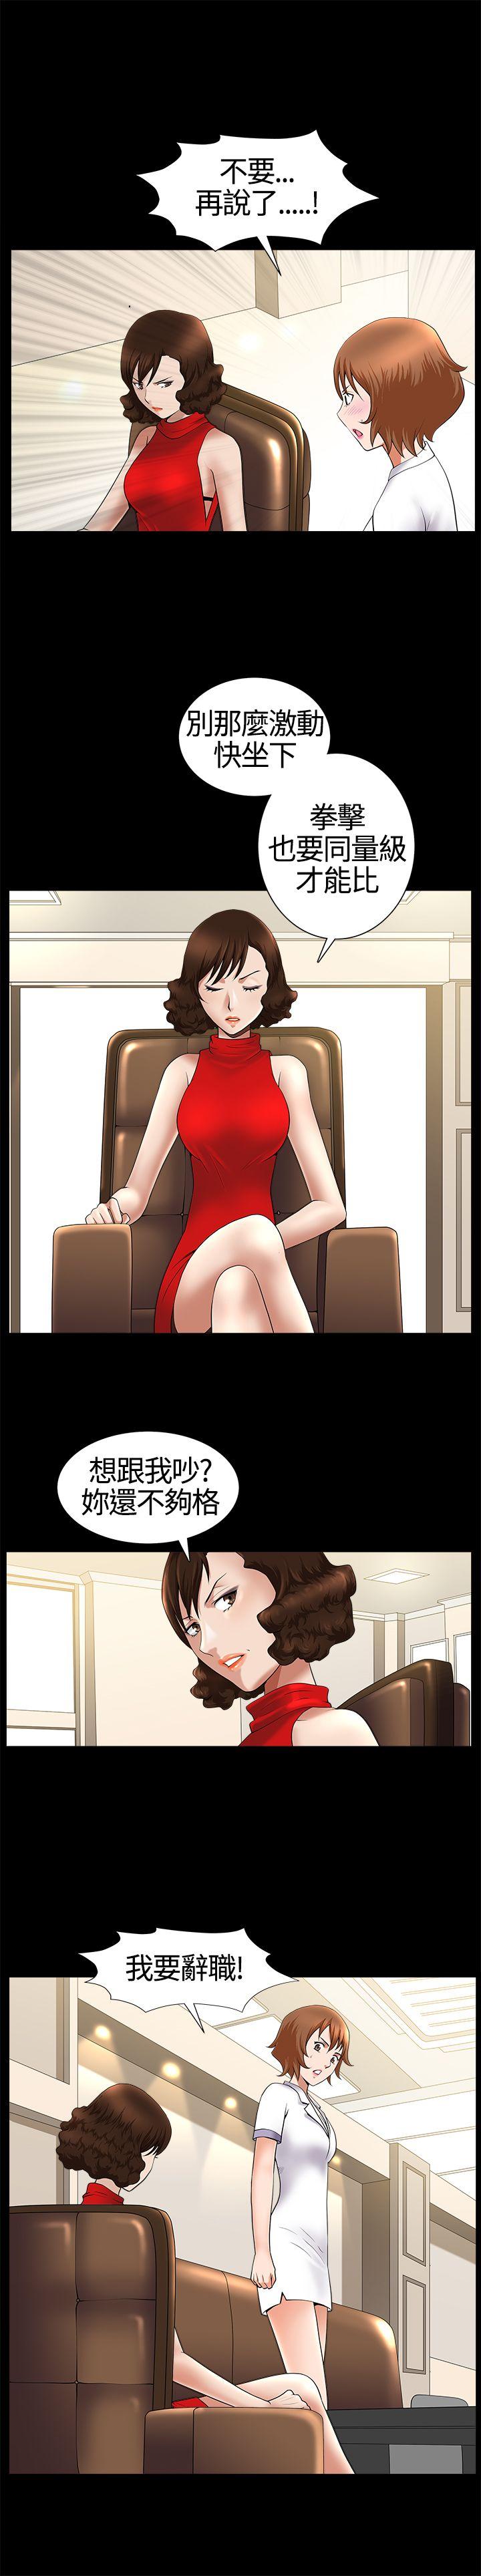 韩国污漫画 人妻性解放3:粗糙的手 第17话 8